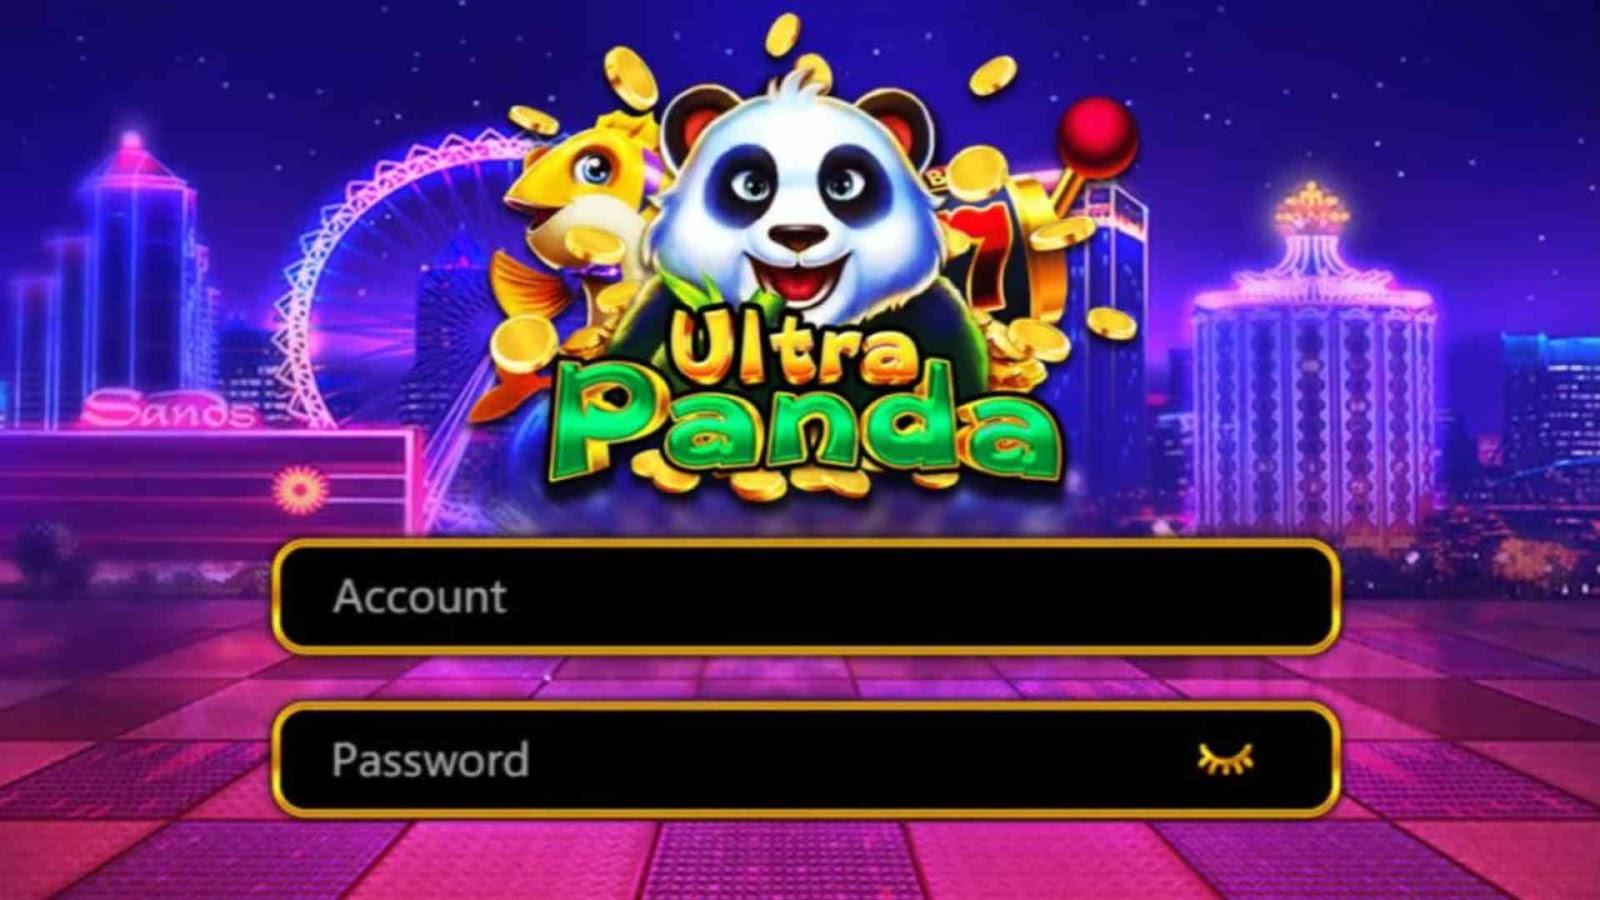  Ultra Panda 